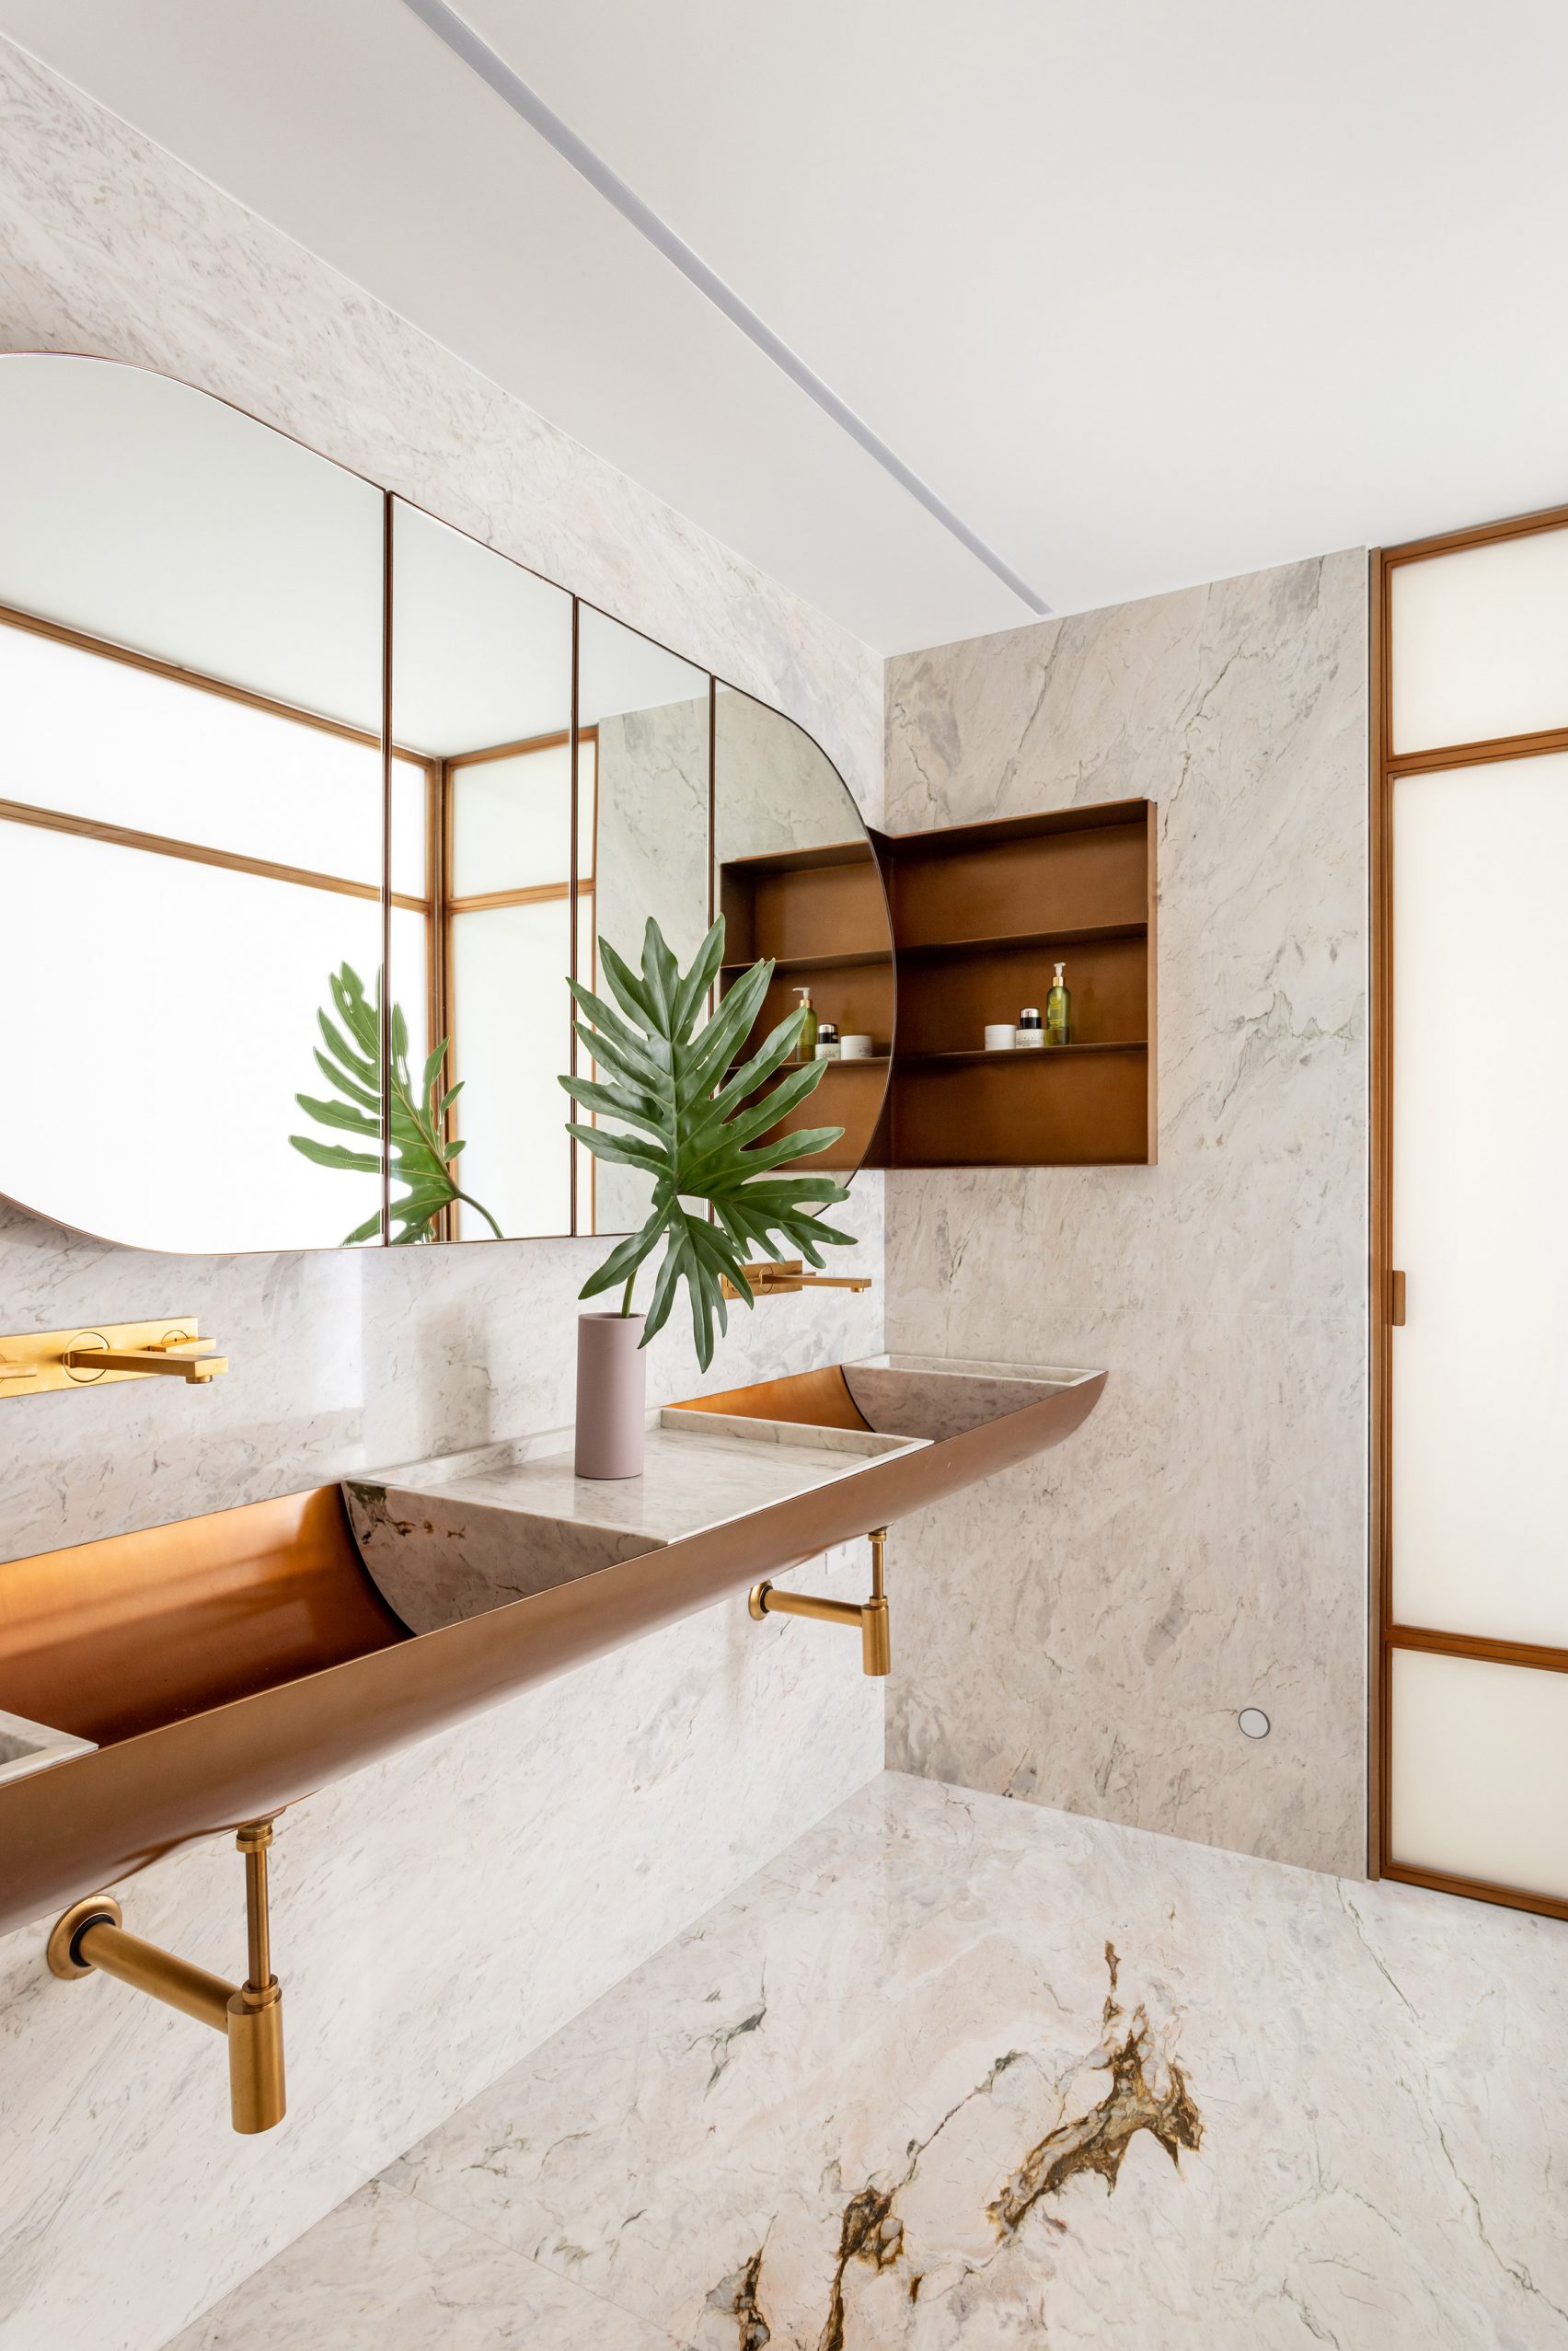 Baño de mármol en apartamento ER, Brasil, por Pascali Semertjian Architects